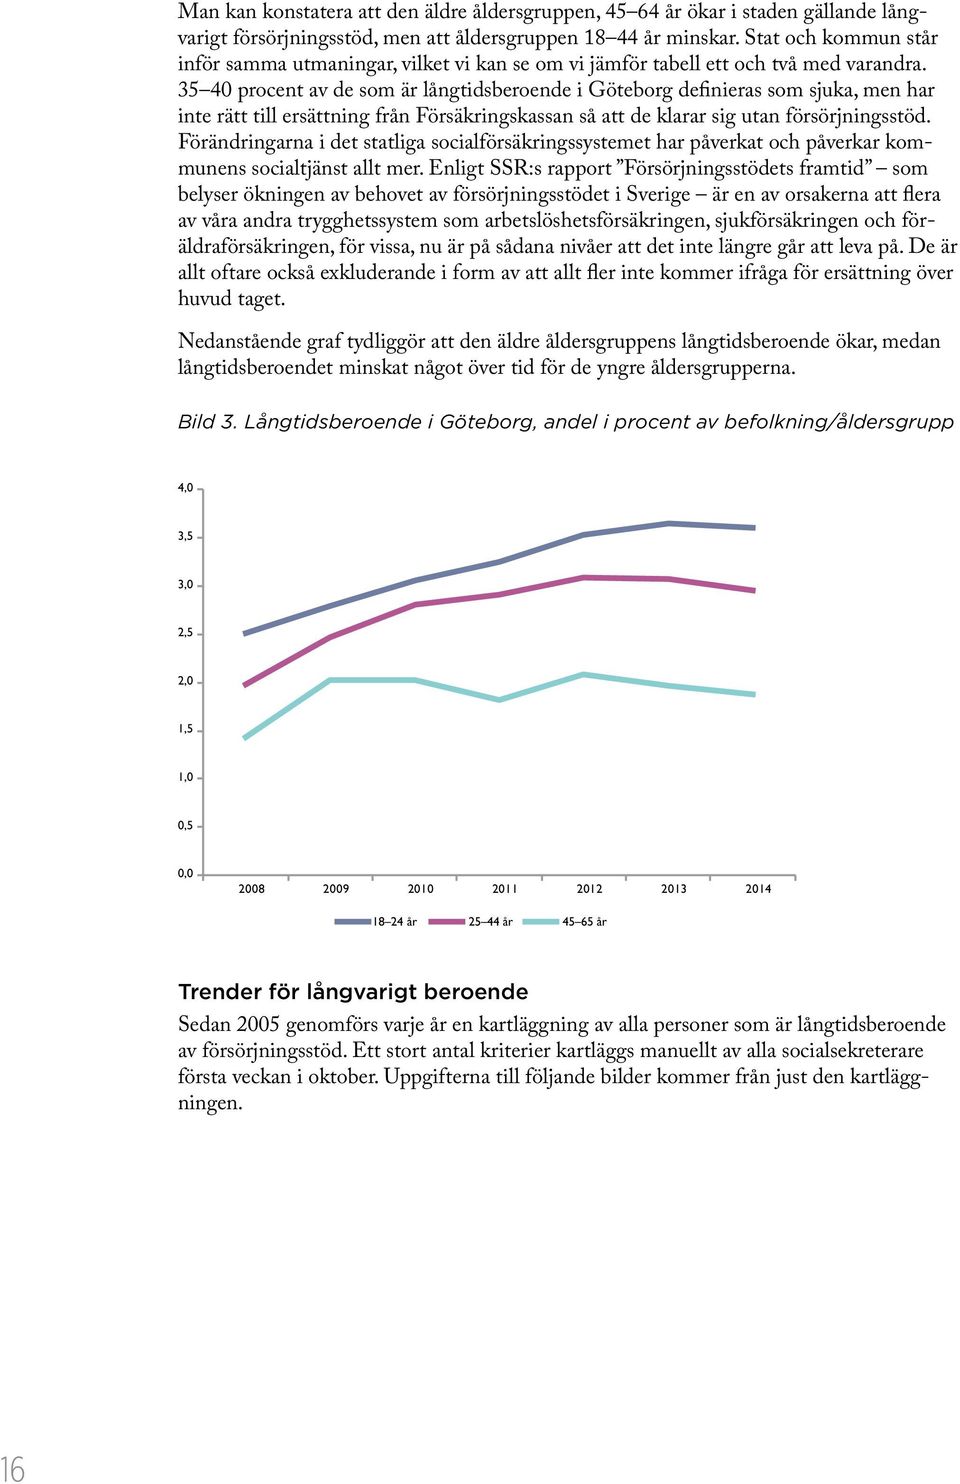 35 40 procent av de som är långtidsberoende i Göteborg definieras som sjuka, men har inte rätt till ersättning från Försäkringskassan så att de klarar sig utan försörjningsstöd.